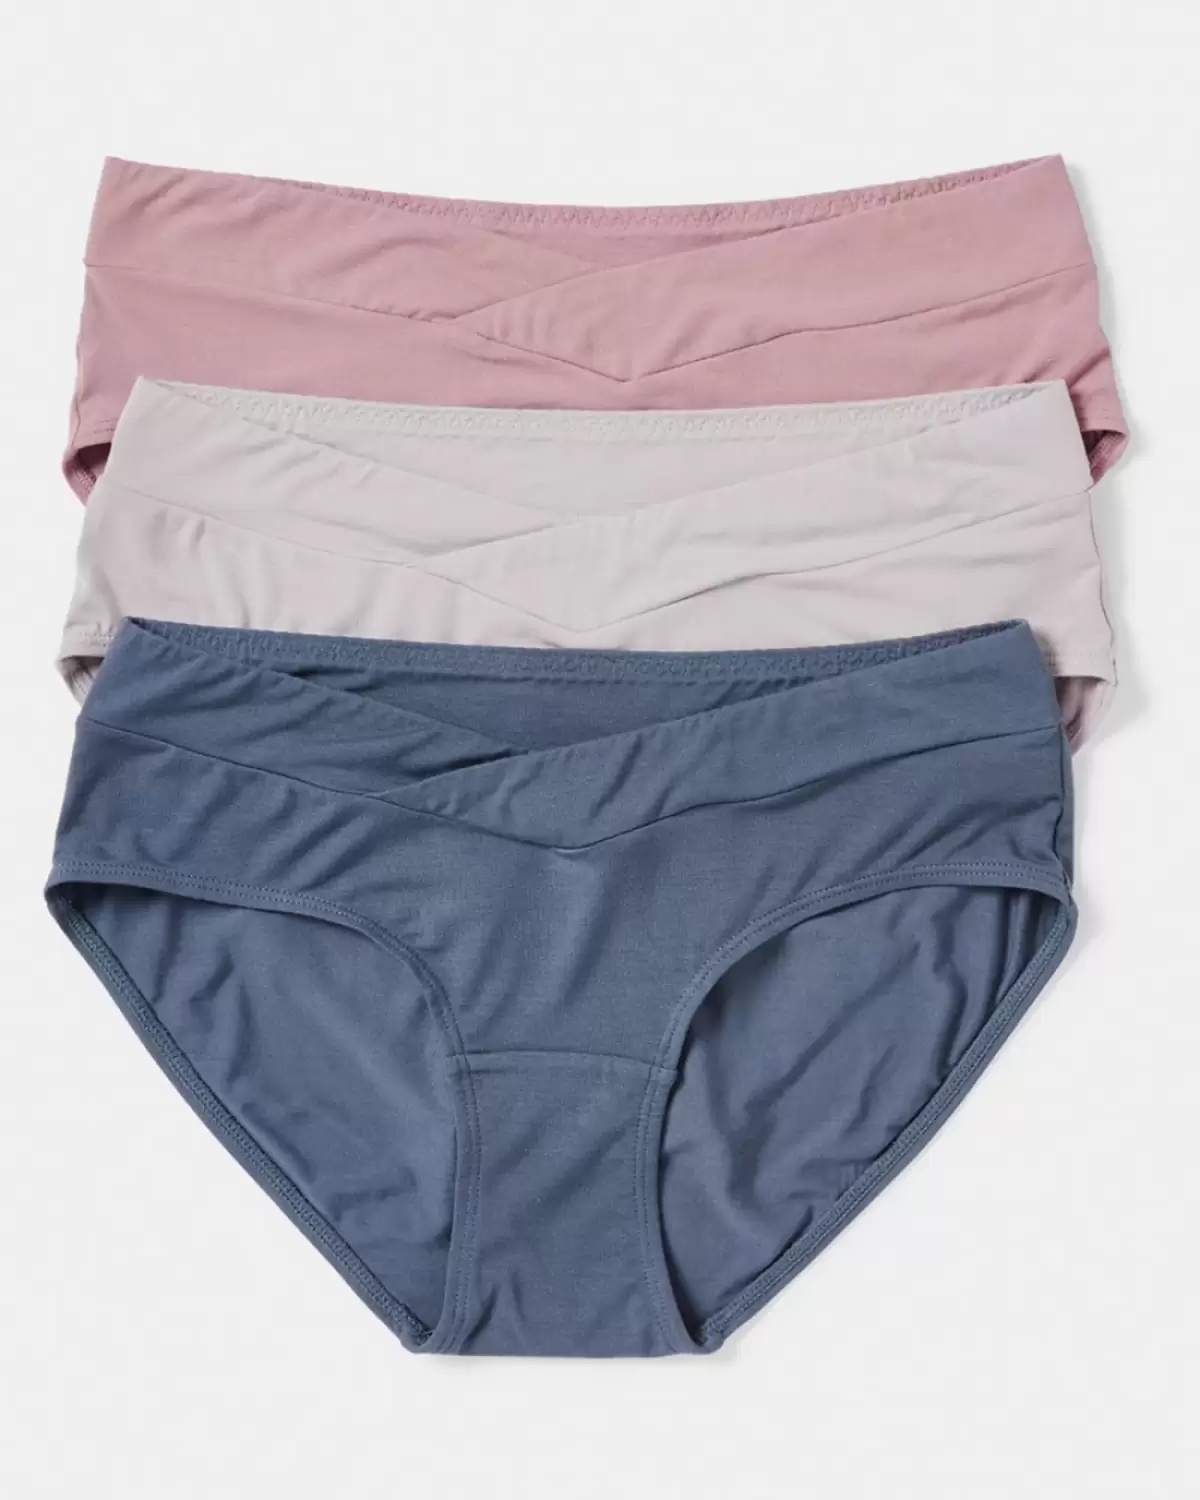 Kmart pulls 'sleazy' girls underwear